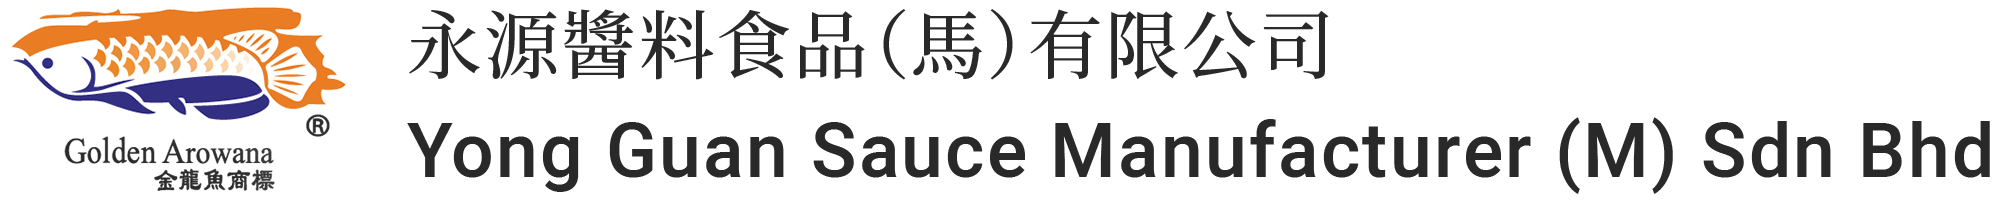 Yong Guan Sauce